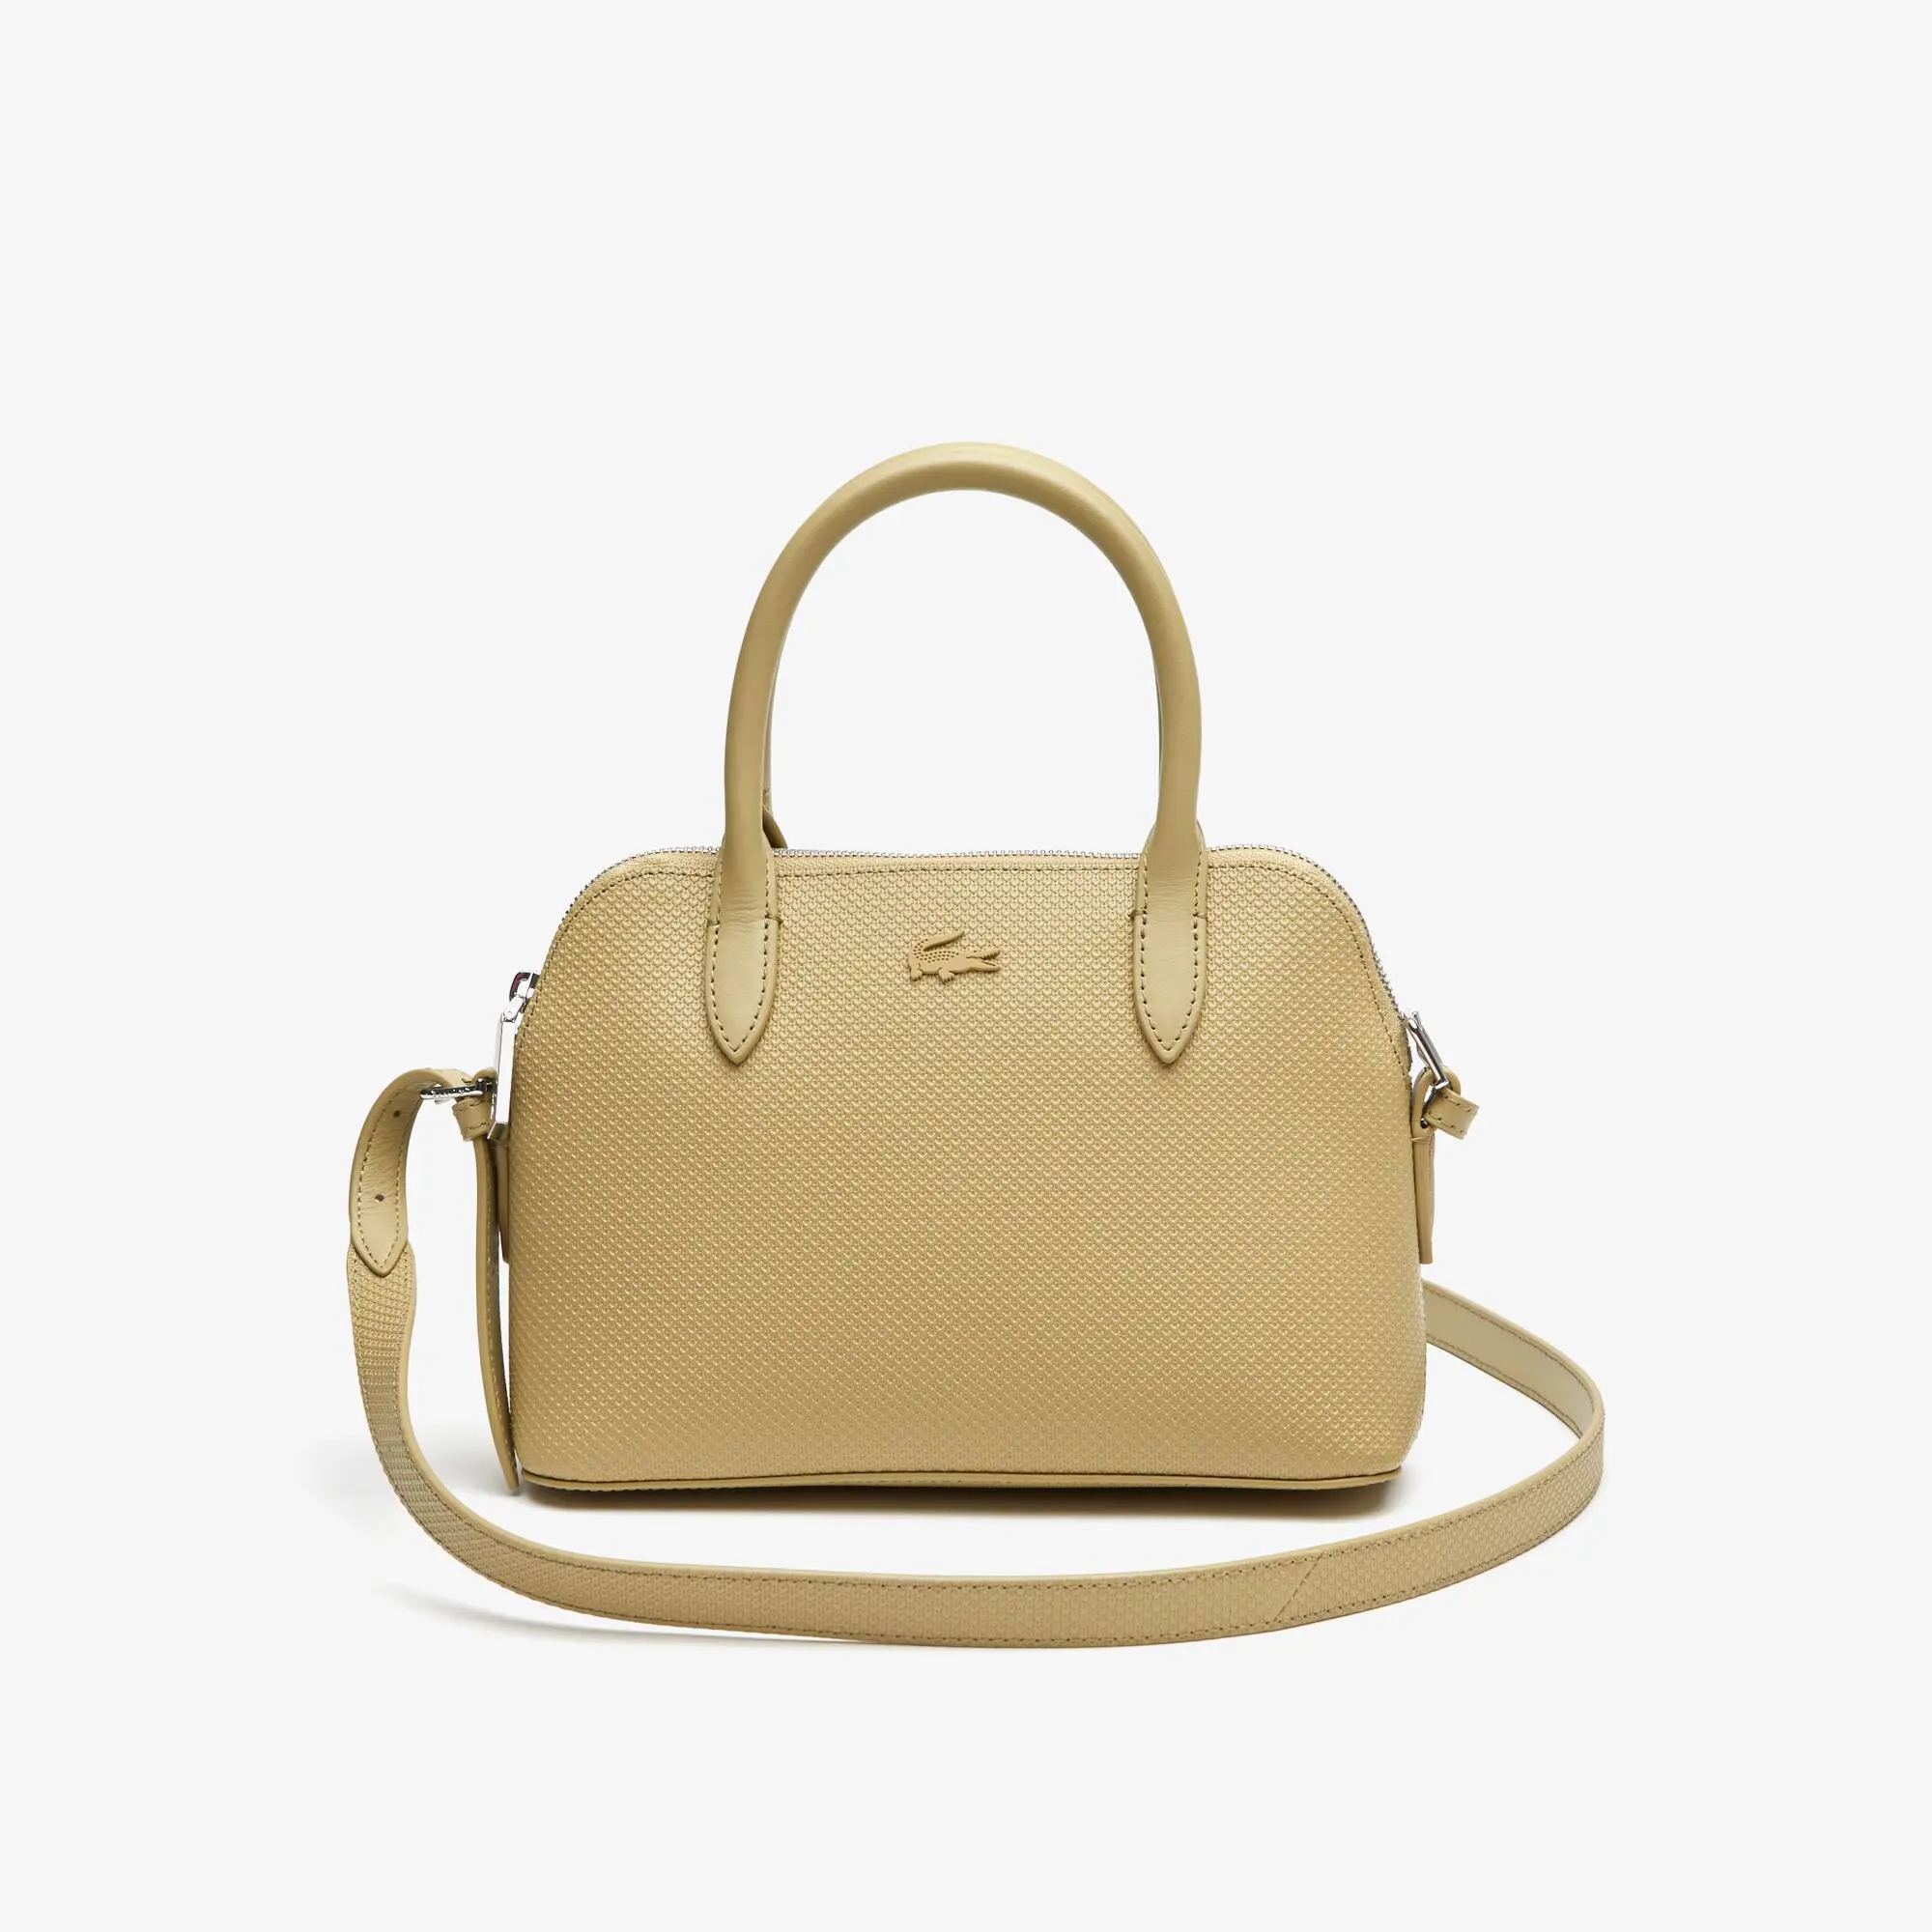 Lacoste Women's Chantaco Piqué Leather Top Handle Bag. 1